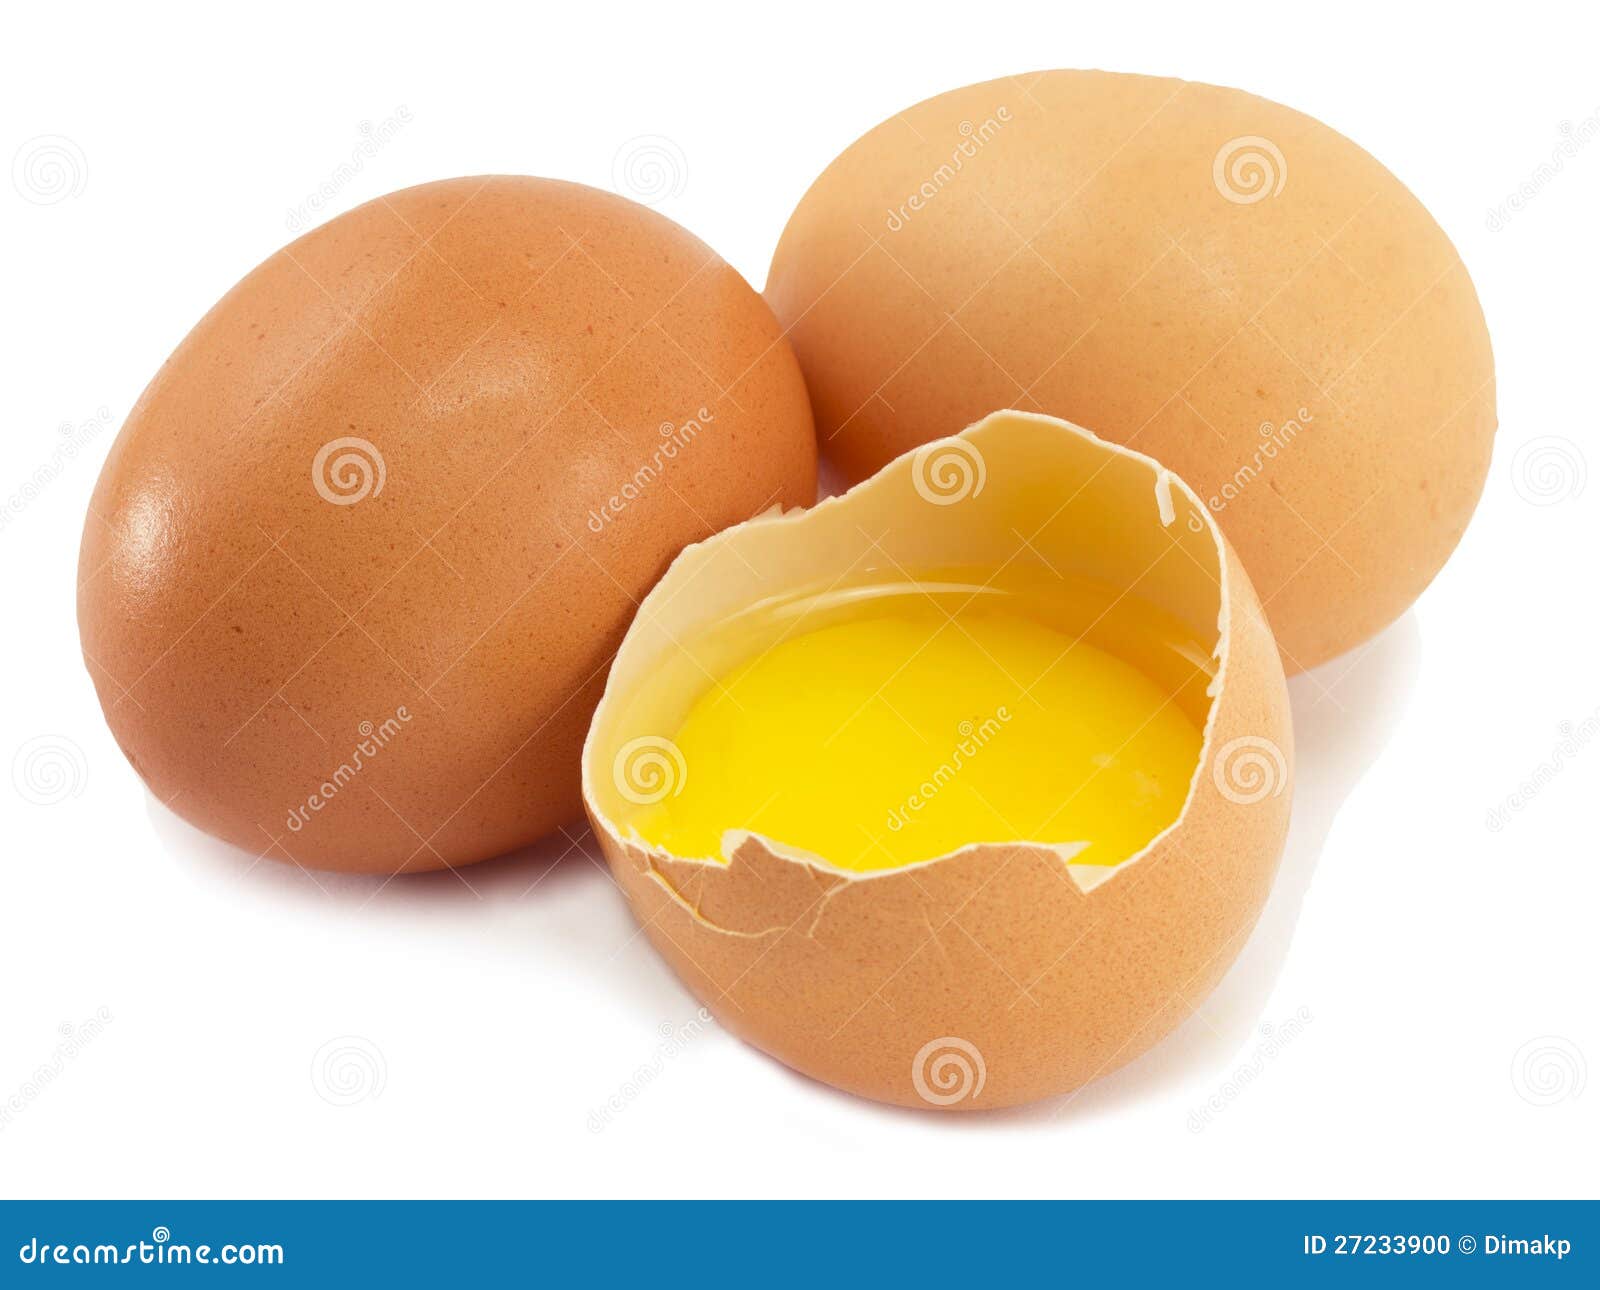 Купить 4 яйца. 4 Яйца.